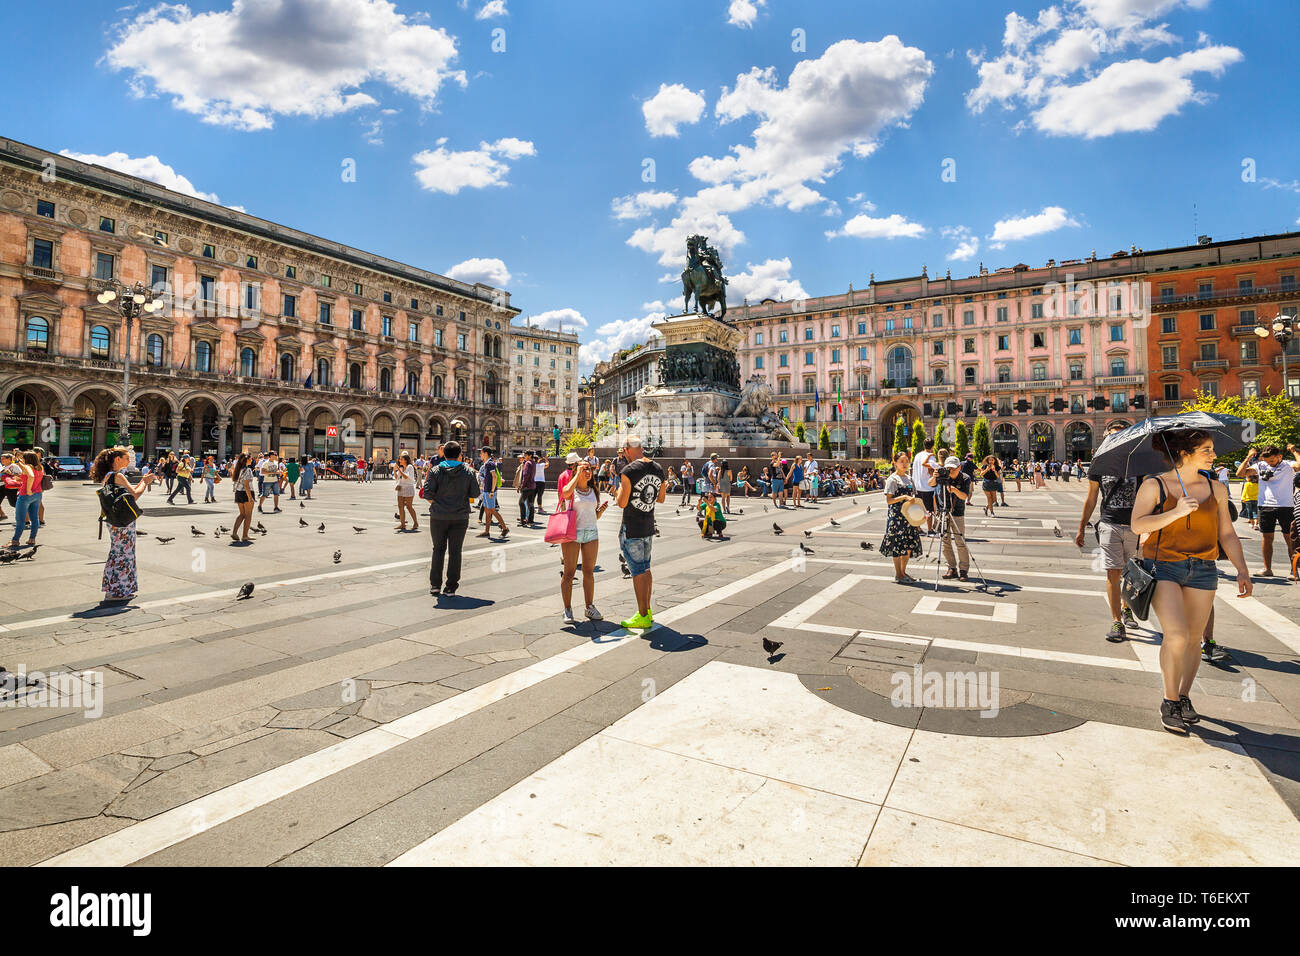 Plaza Principal de la ciudad de Milán, Italia. Foto de stock